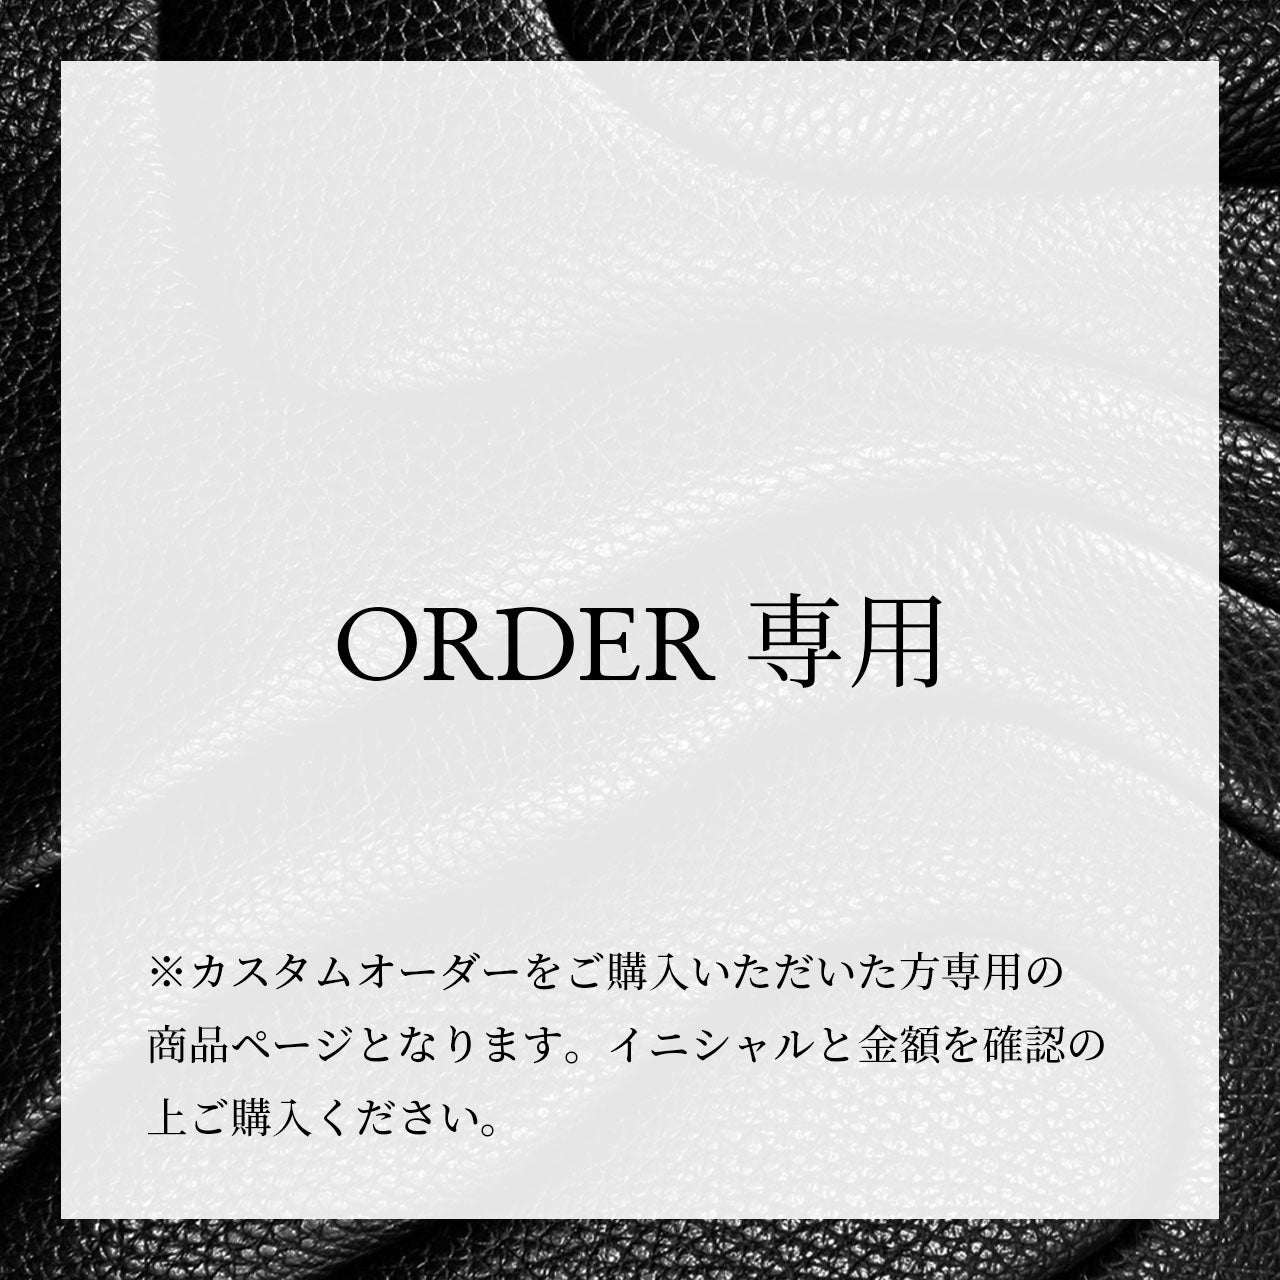 Mr. H order